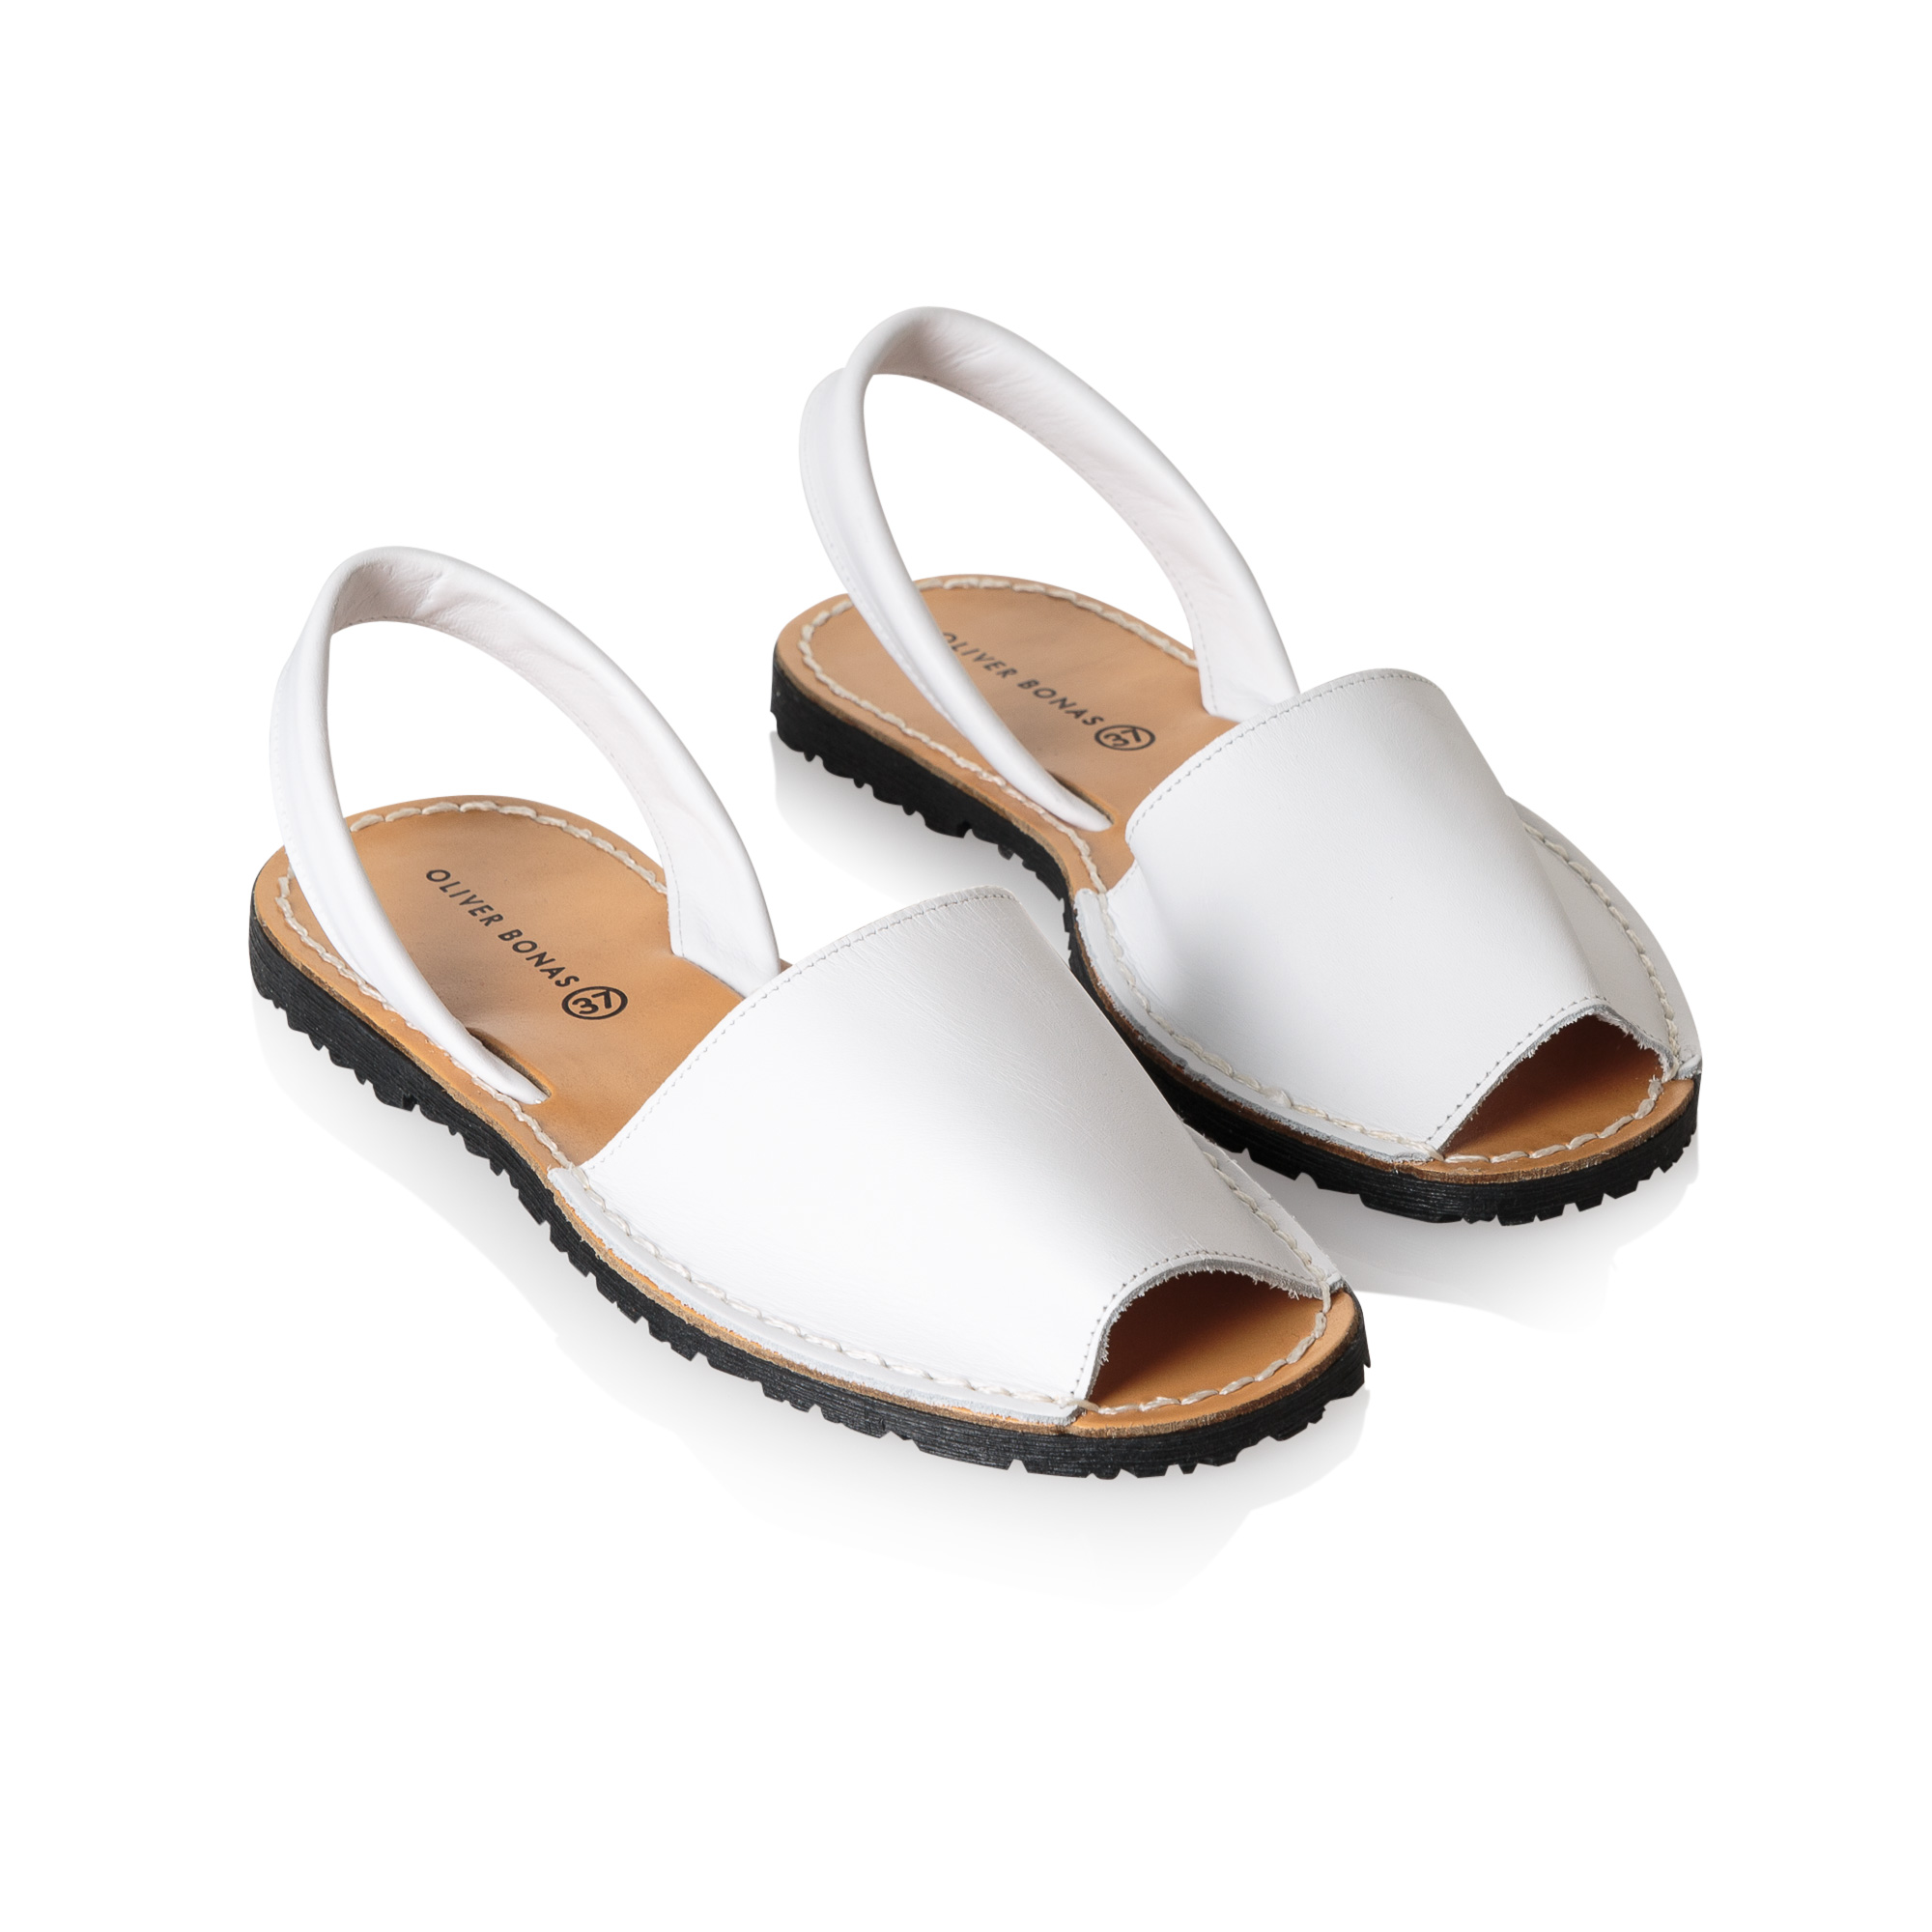 Menorquina Style White Leather Sandals | Oliver Bonas